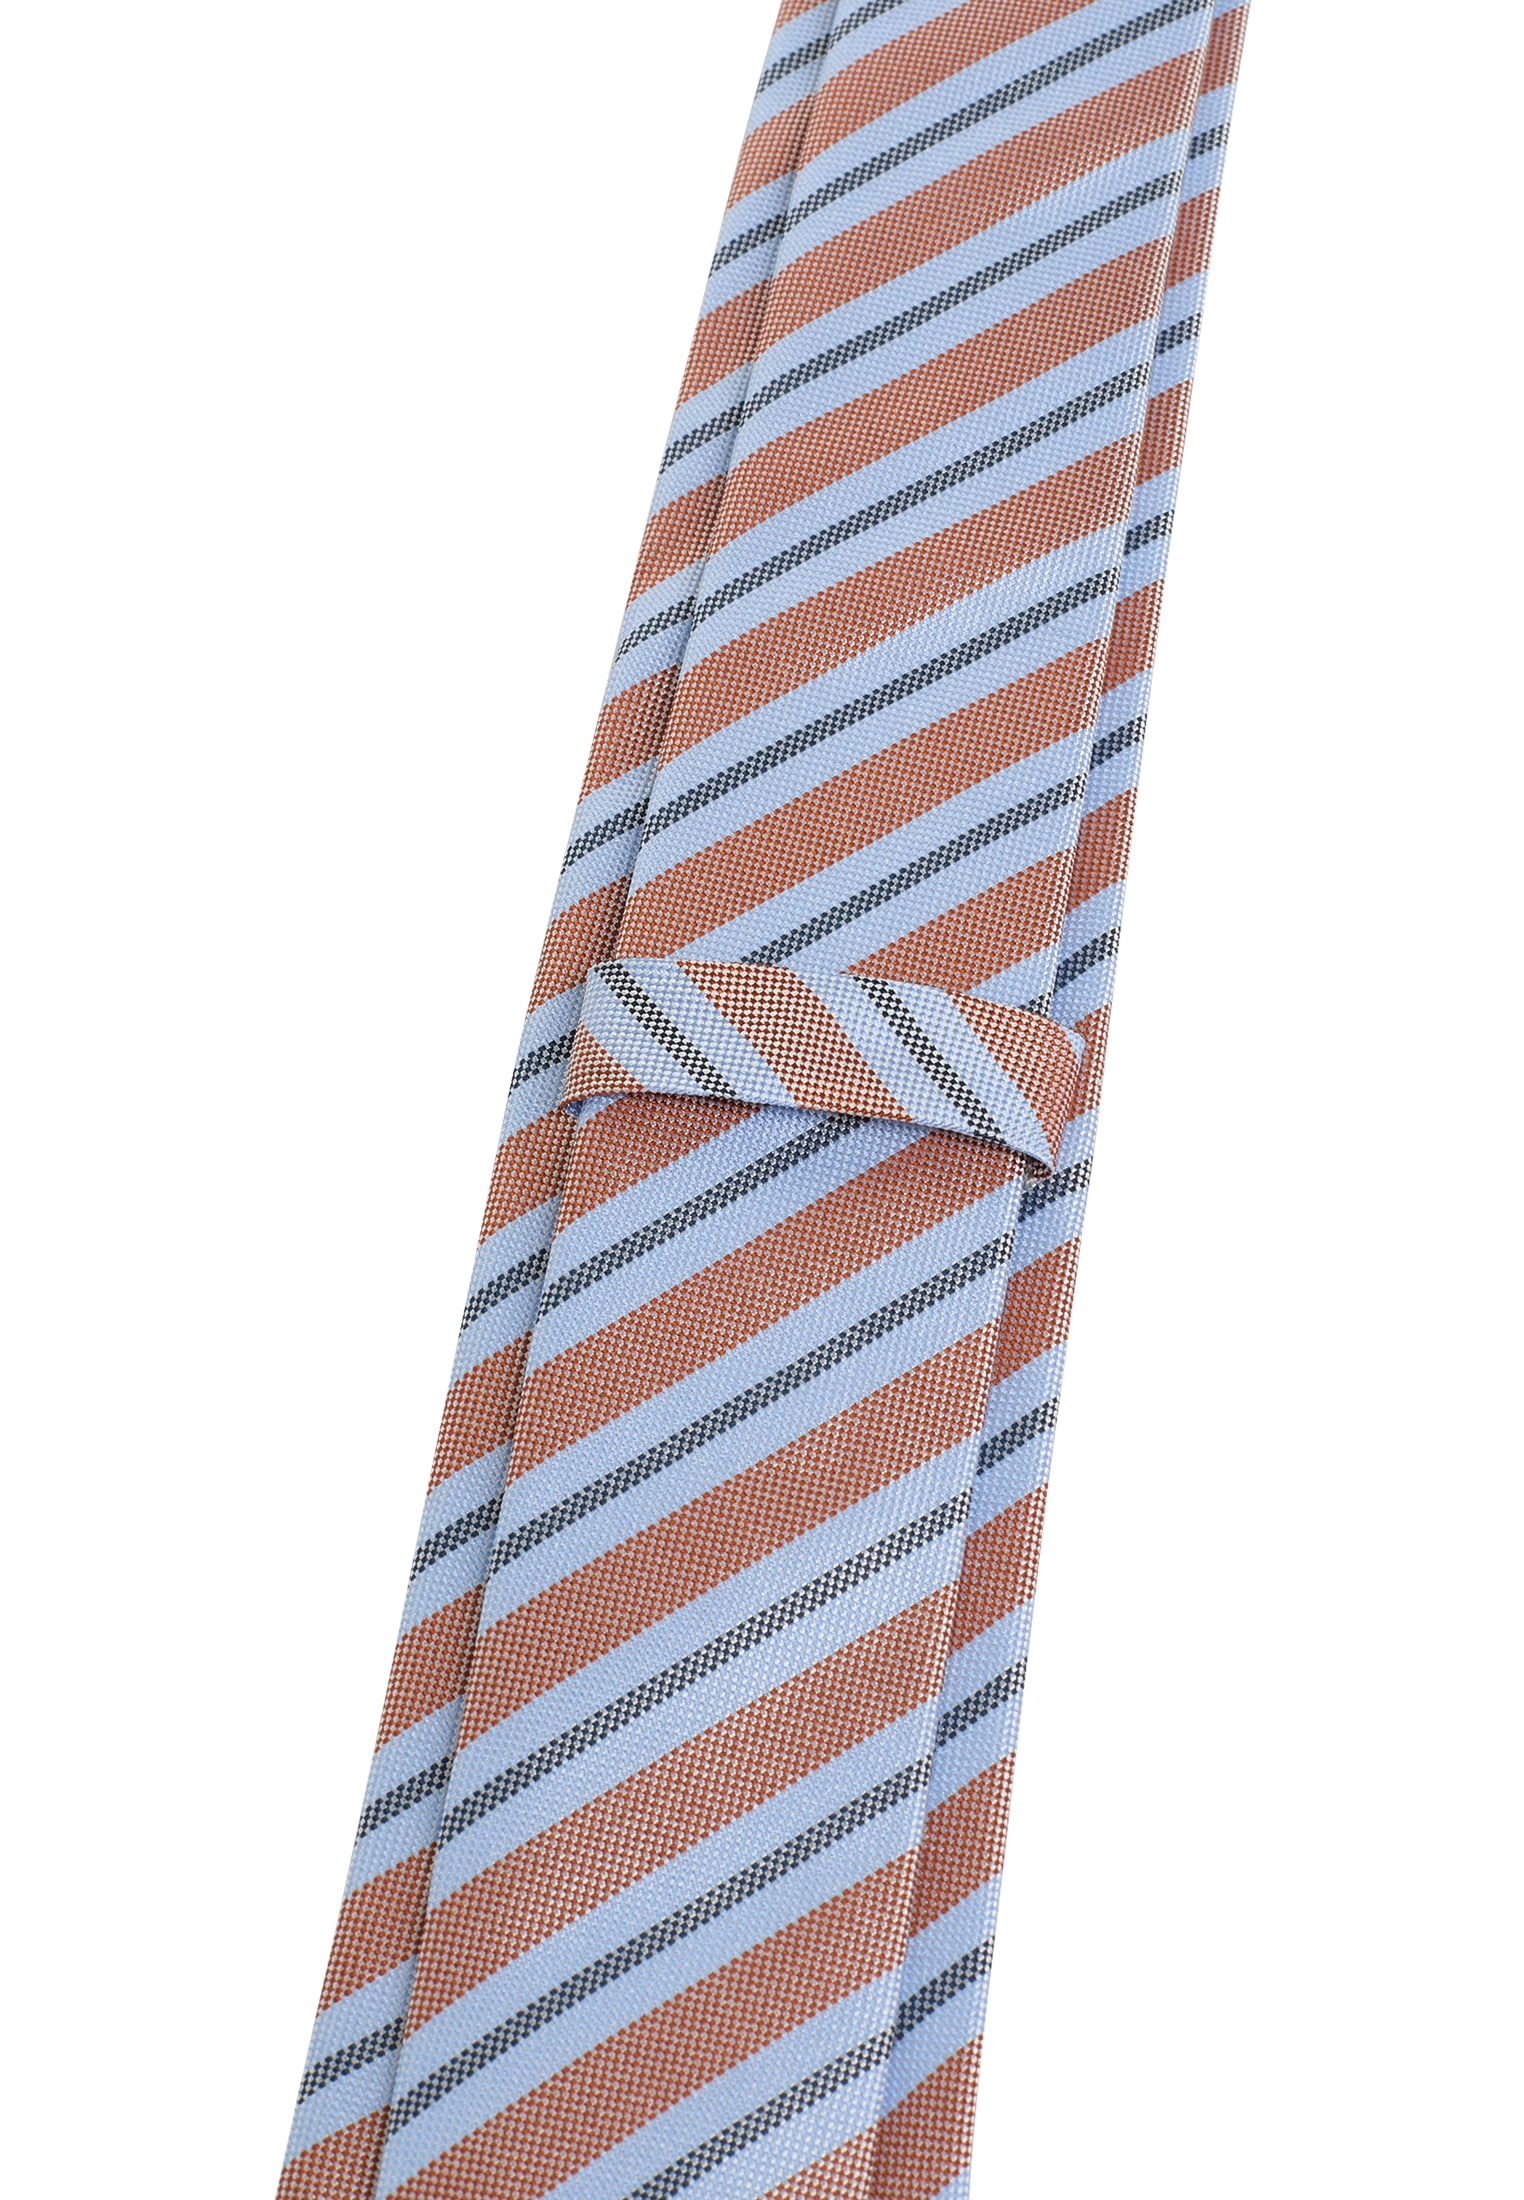 jetzt und bei Krawatte Ackermann kaufen mehr Krawatten | online